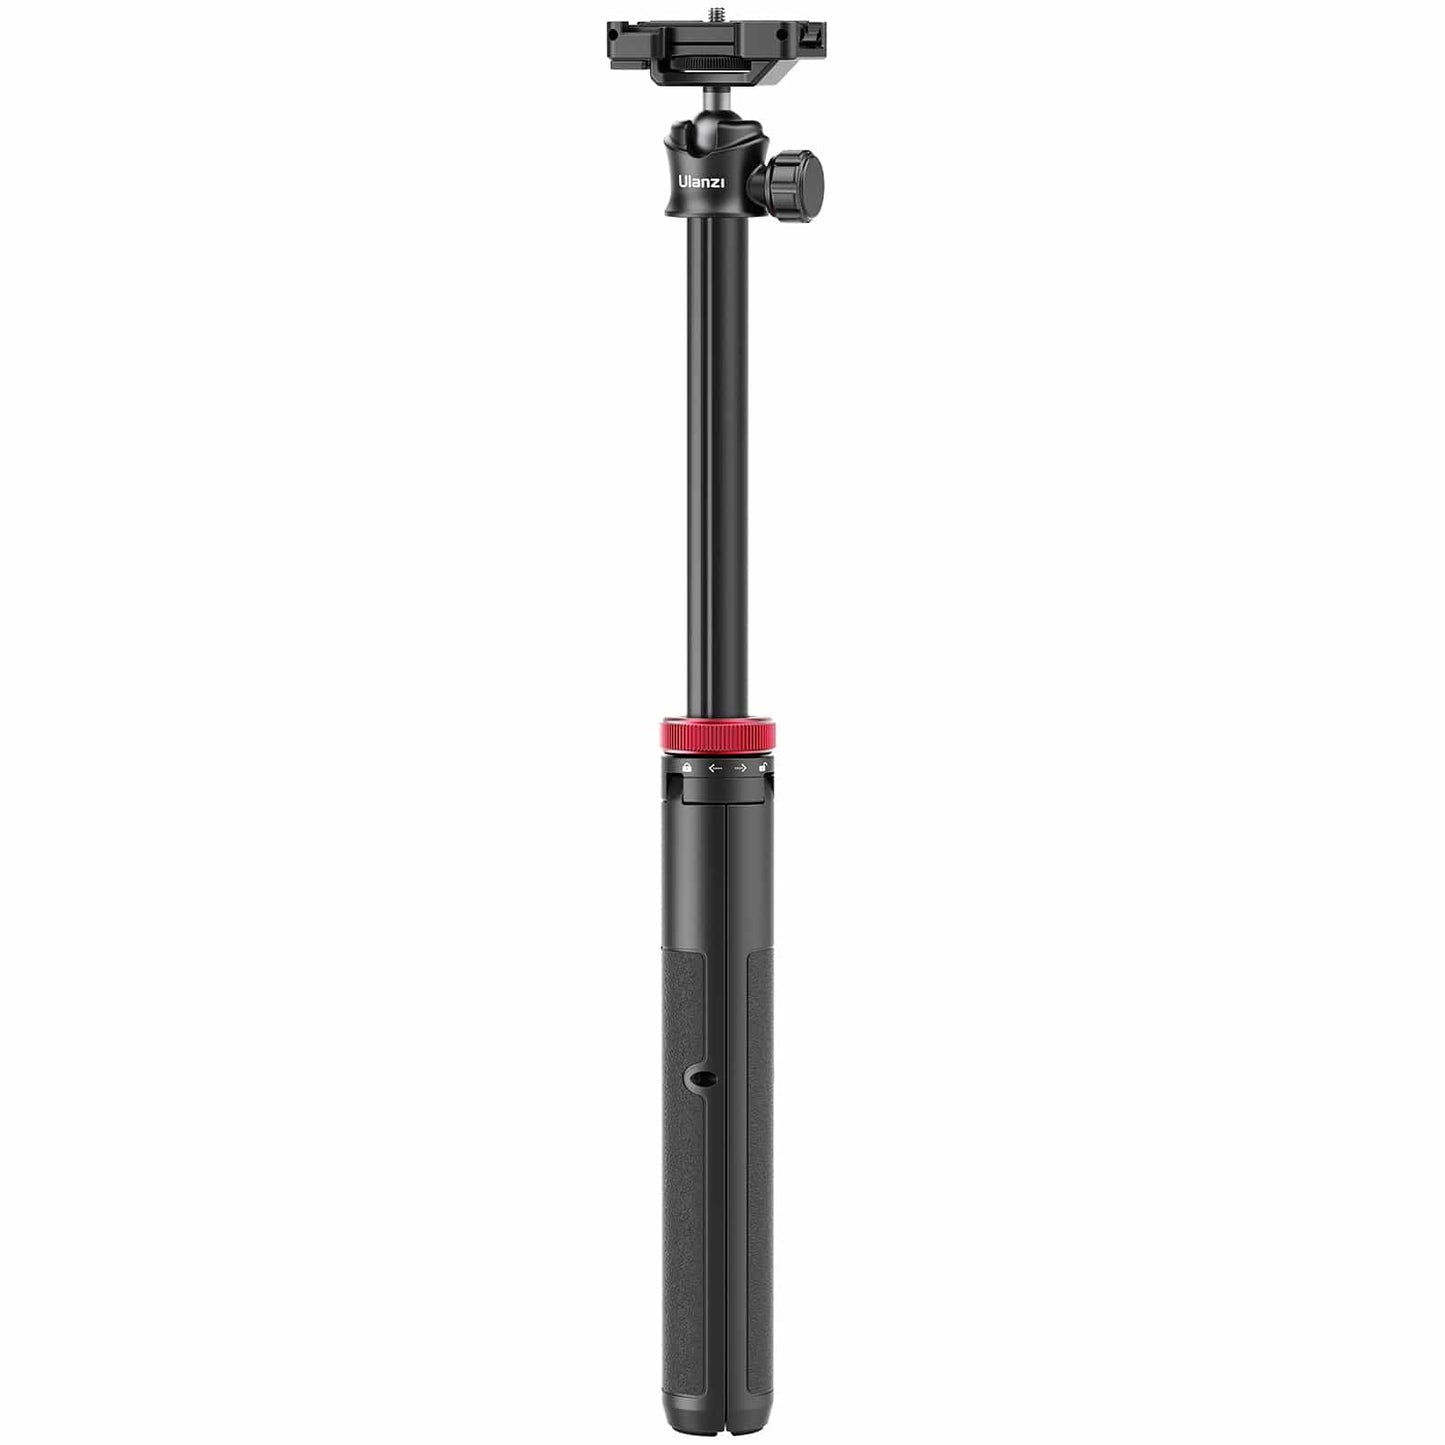 Ulanzi MT-44 Selfiestick Statief voor telefoon en camera - 146cm